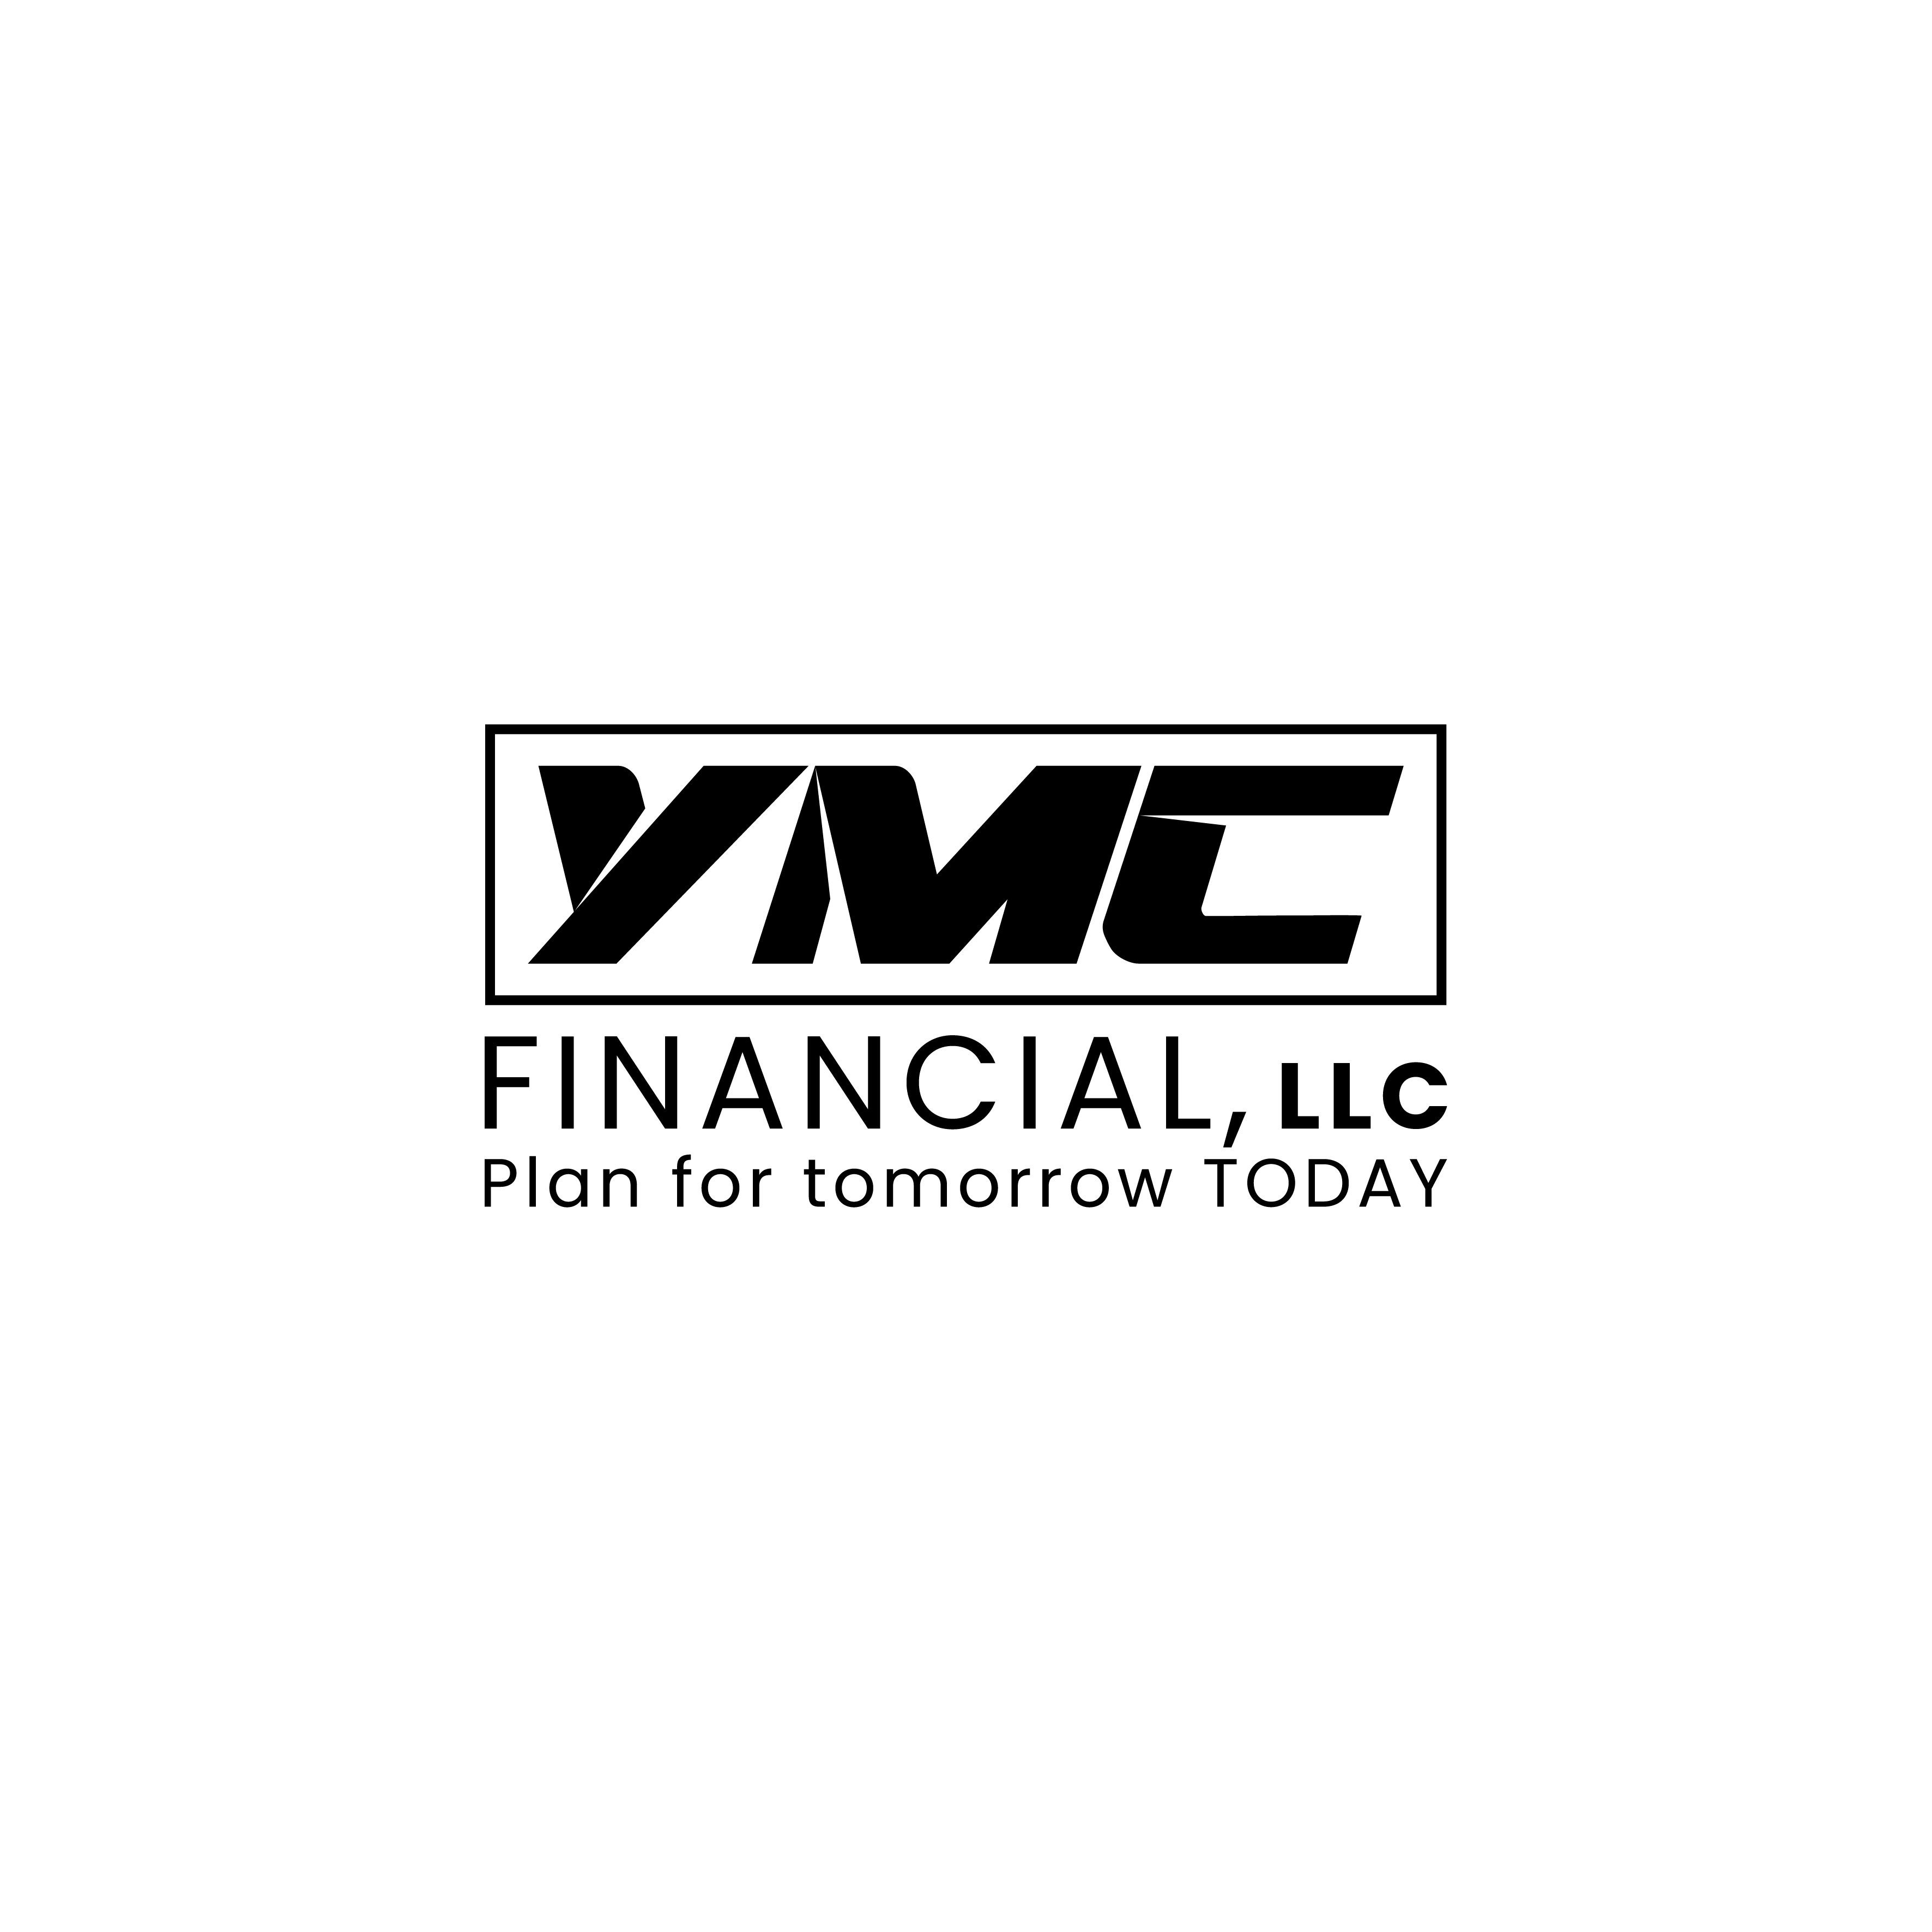 YMC Financial, LLC